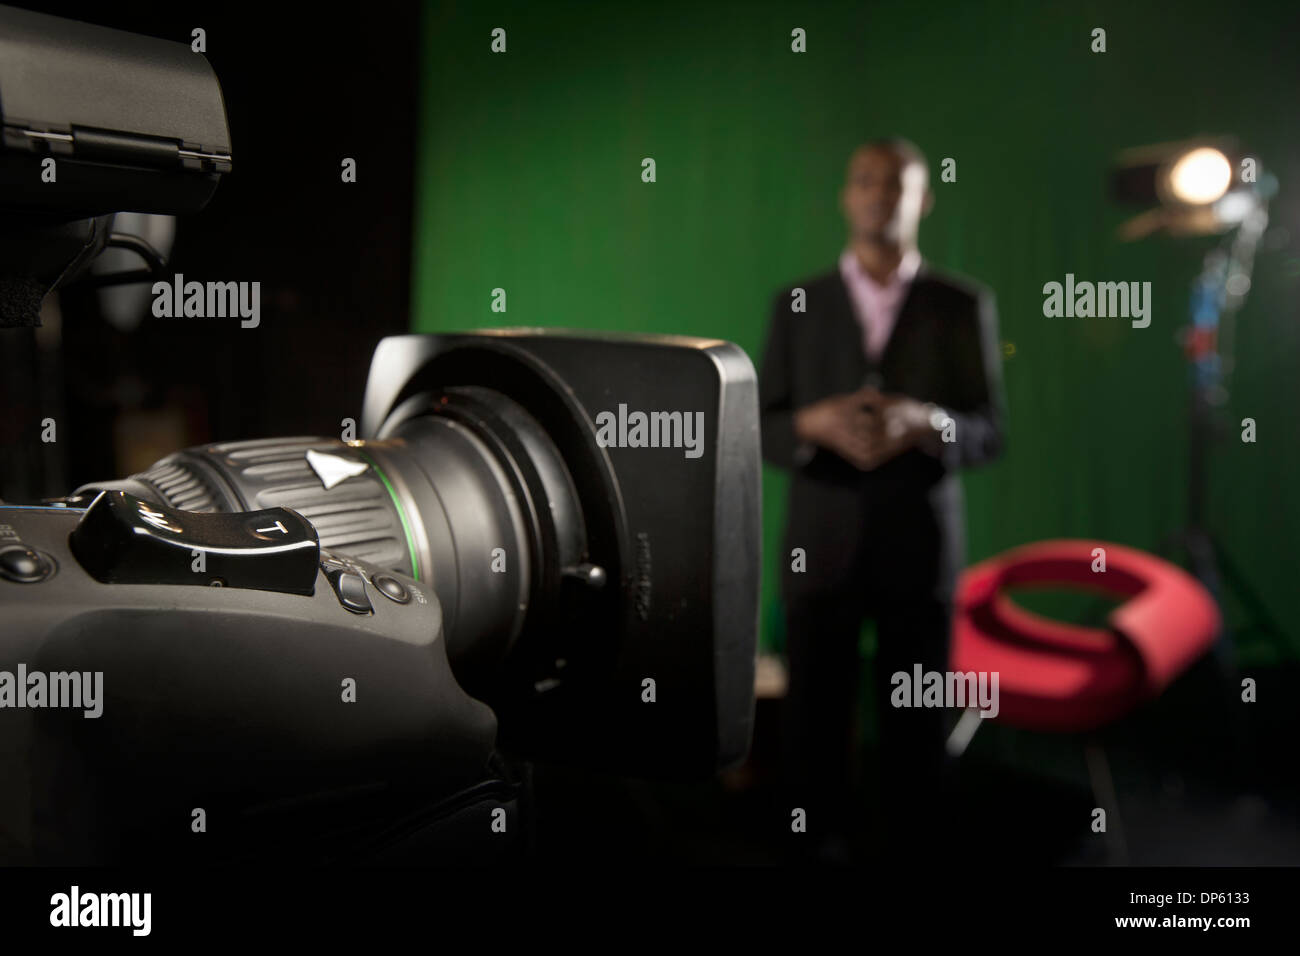 Objectif zoom de la caméra de télévision de premier plan avec un présentateur hors-de-focus à l'arrière-plan. Banque D'Images